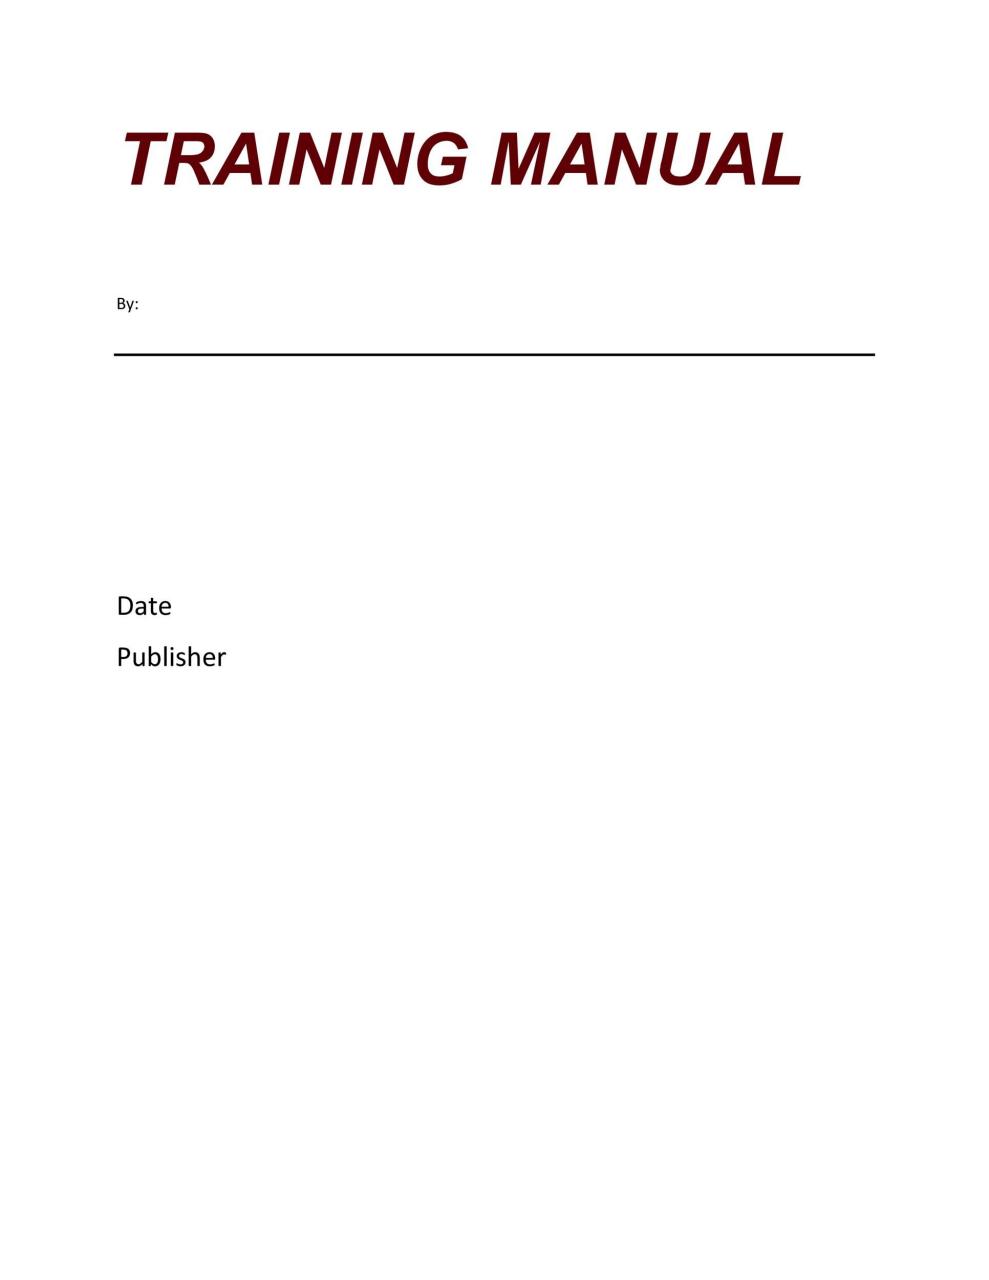 plantilla de manual de entrenamiento gratis 21